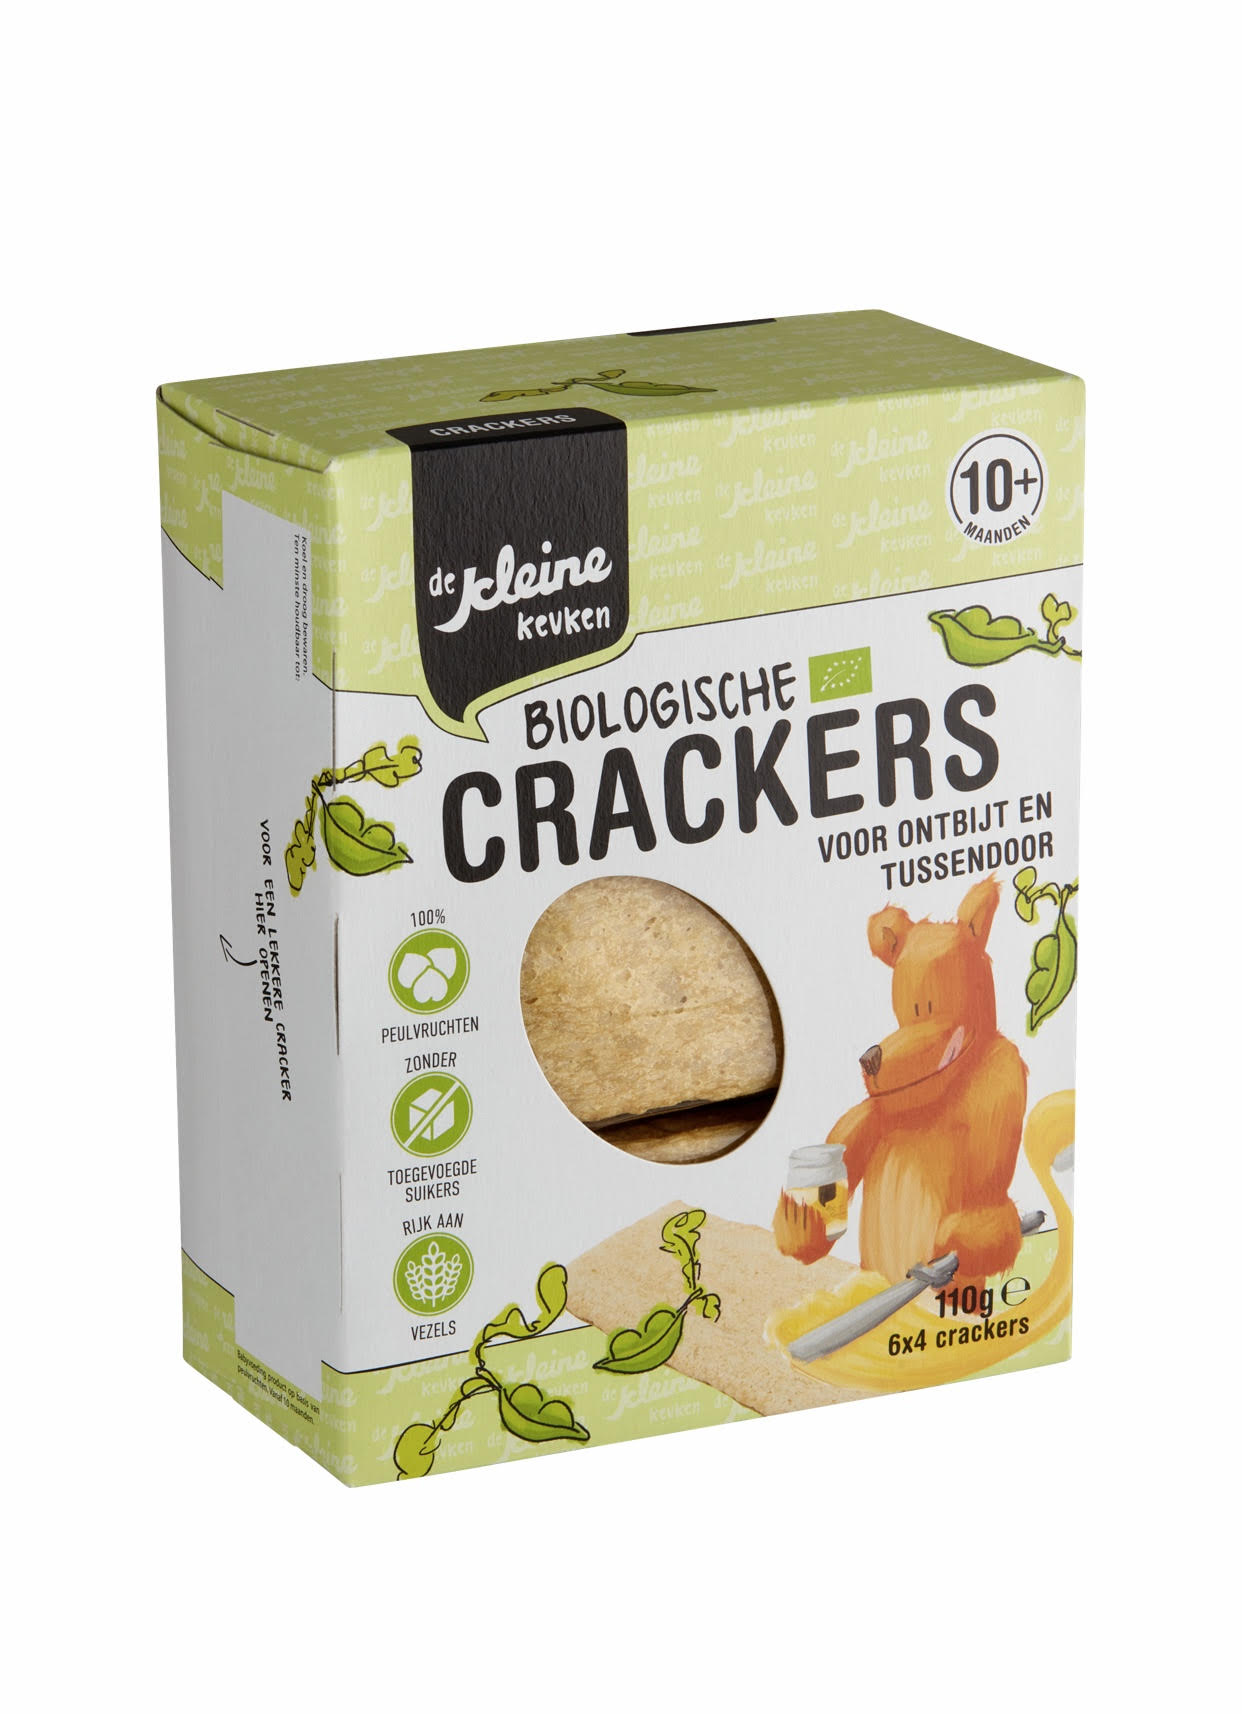 Biologische Crackers voor ontbijt en tussendoor